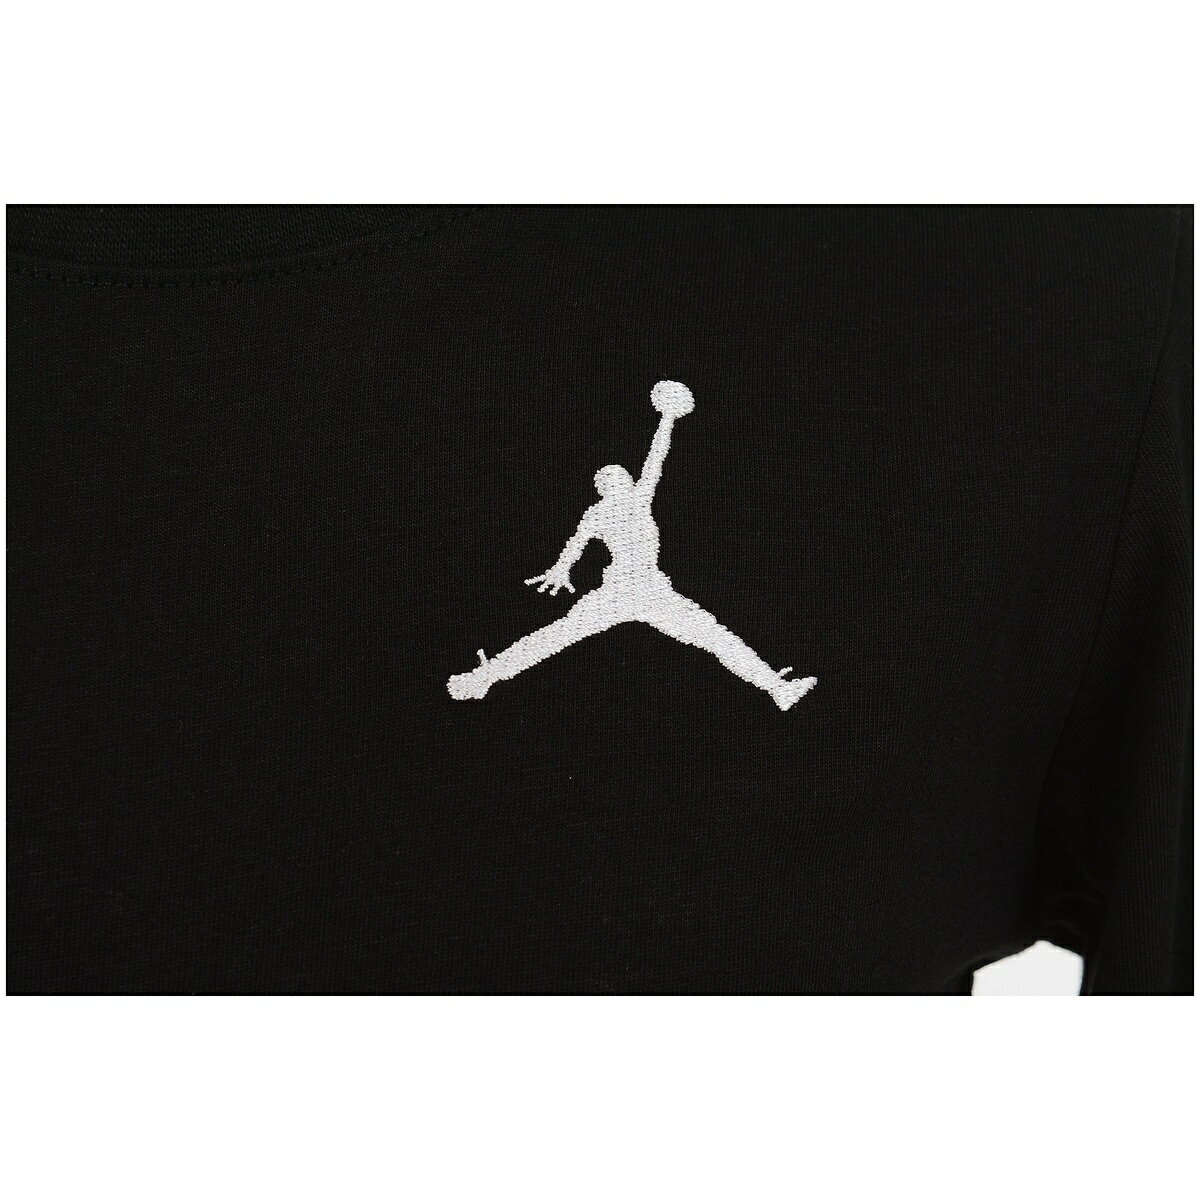 ● NIKE (ナイキ) JUMPMAN LONG SLEEVE T-SHIRT ジュニアスポーツウェア Tシャツ ボーイズ 023(黒) 85A903-023